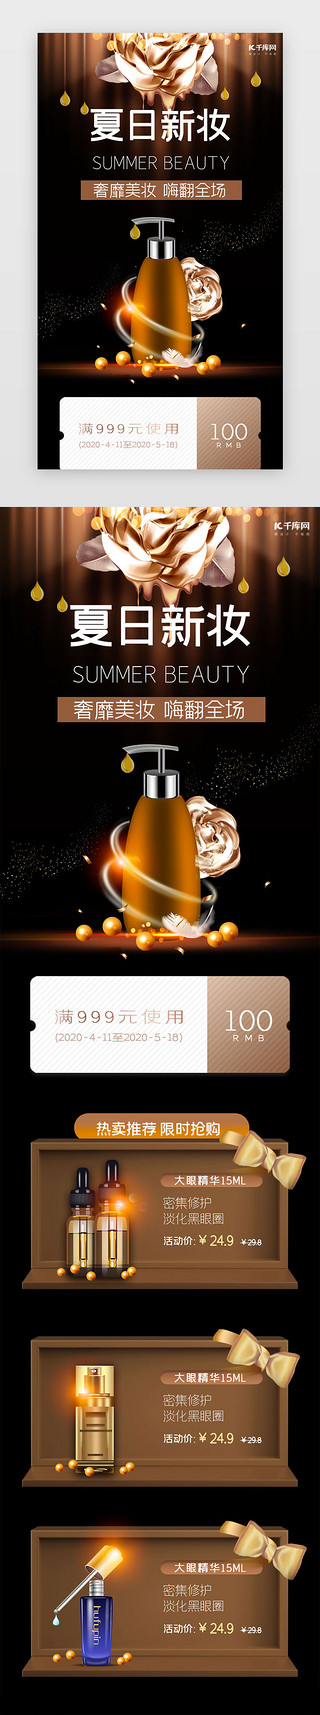 棕色扇子UI设计素材_棕色简约夏日美妆促销h5长图电商